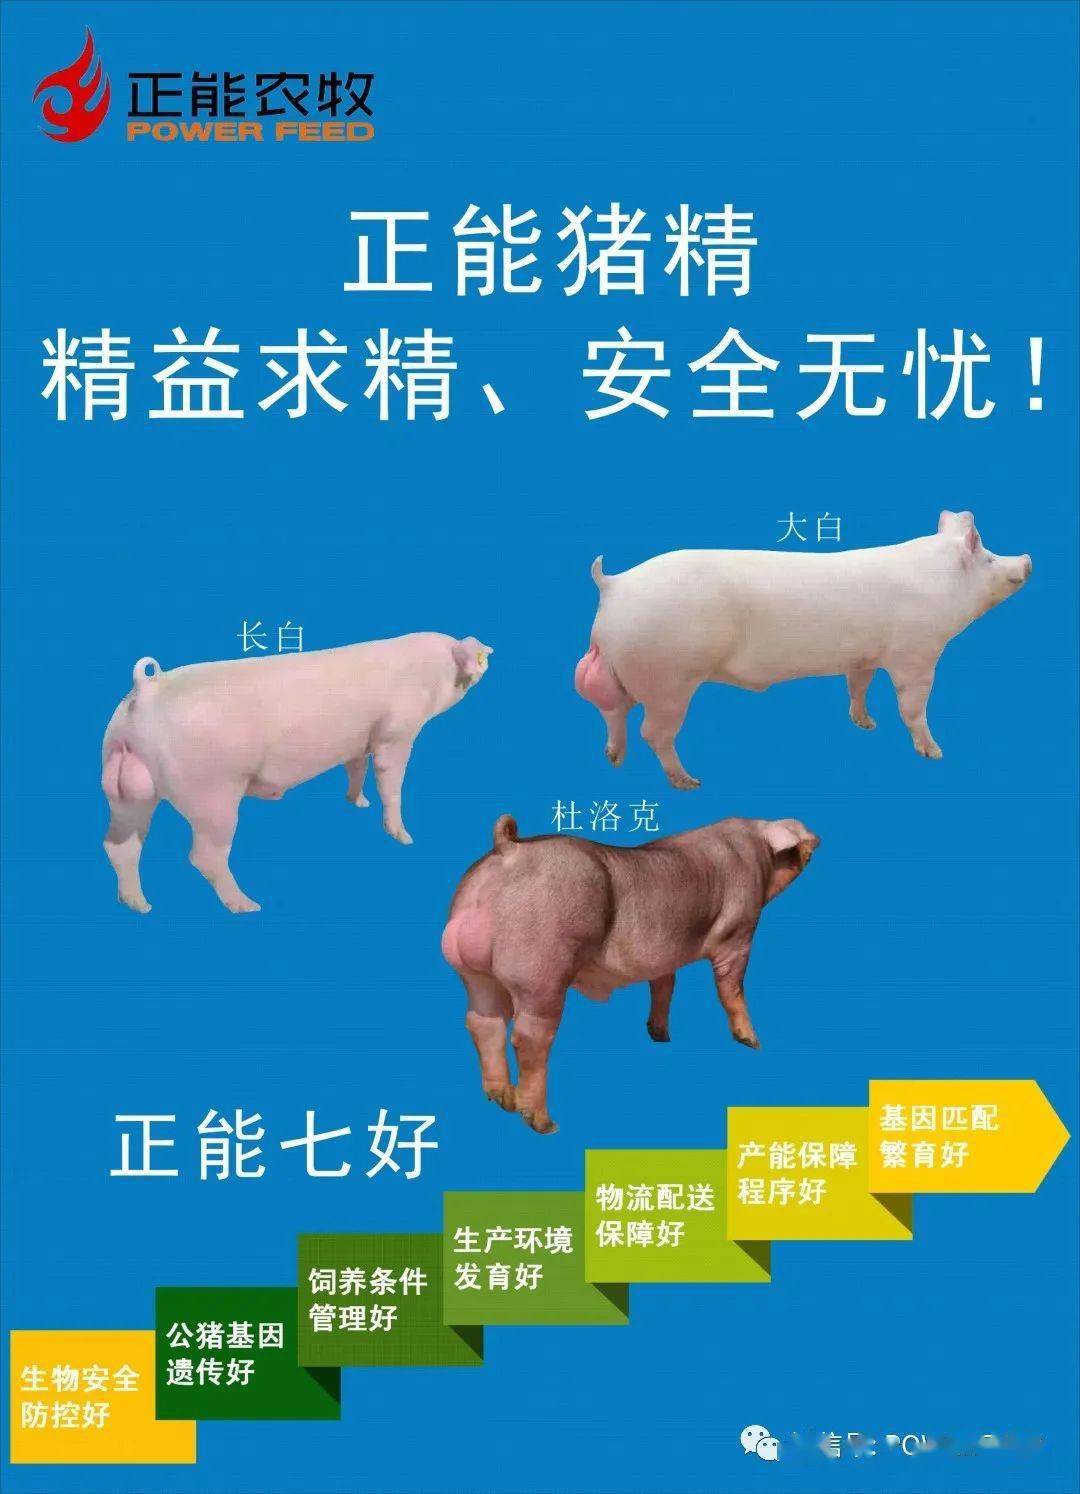 上海祥欣榆林公猪站图片